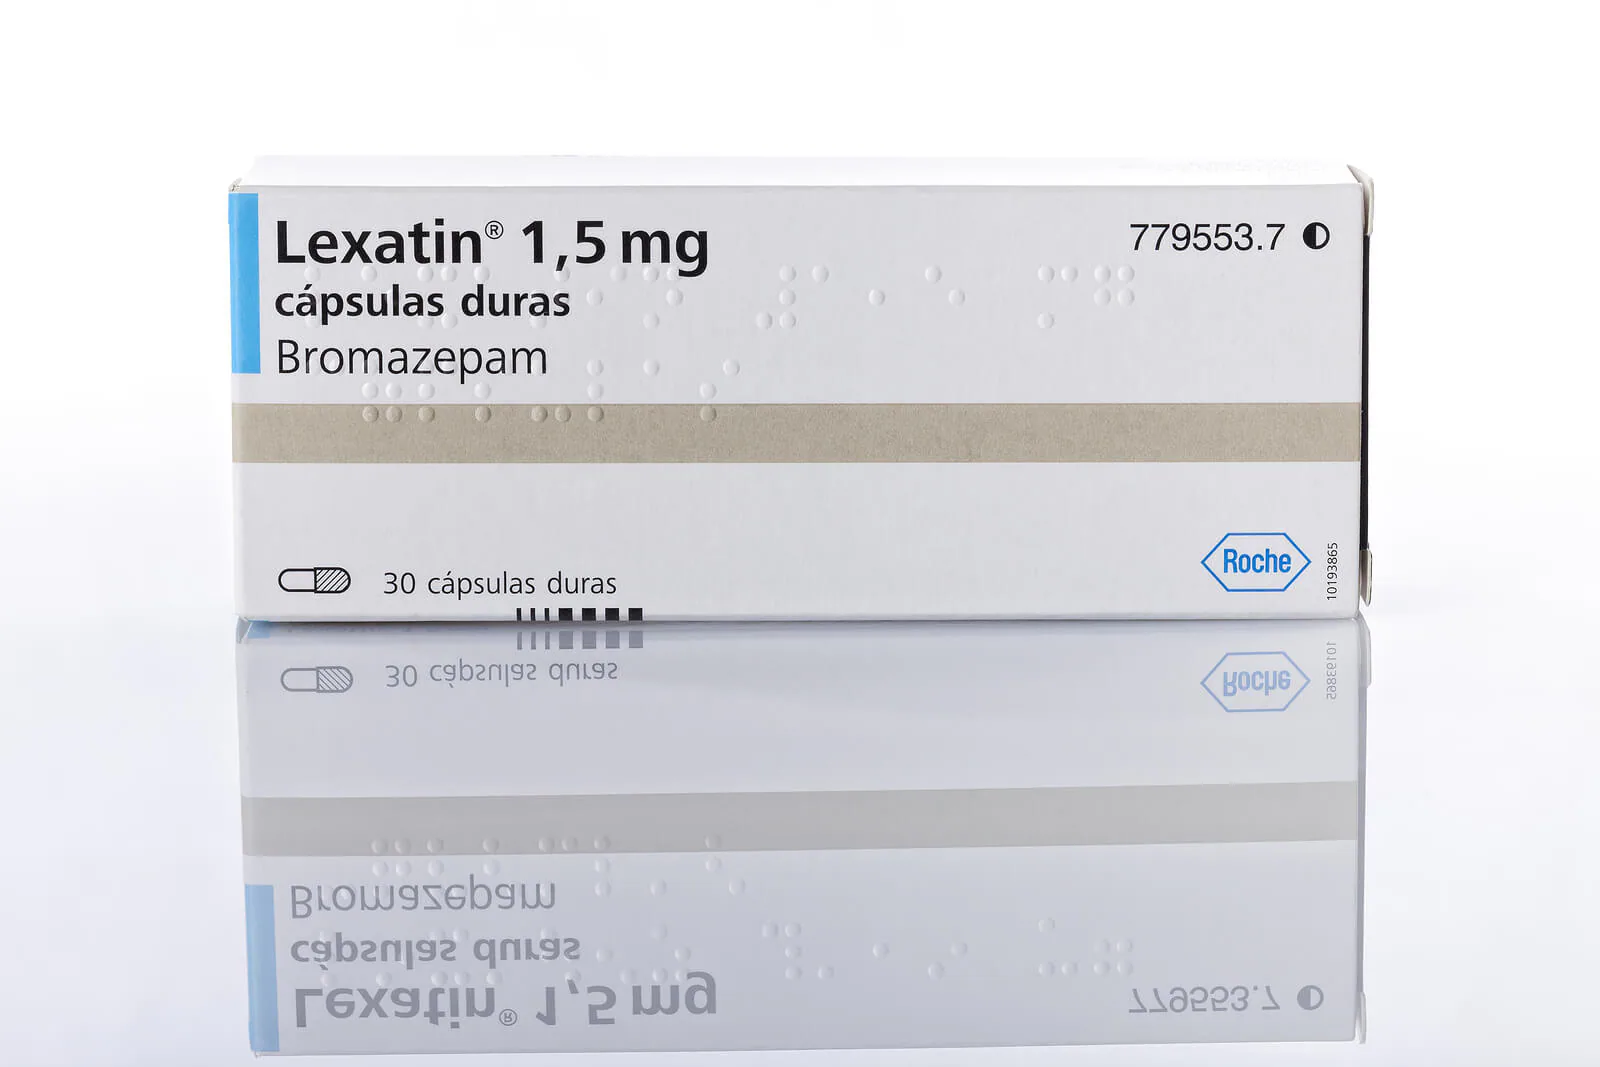 ¿Cuántas pastillas de Lexatin se pueden tomar al día?